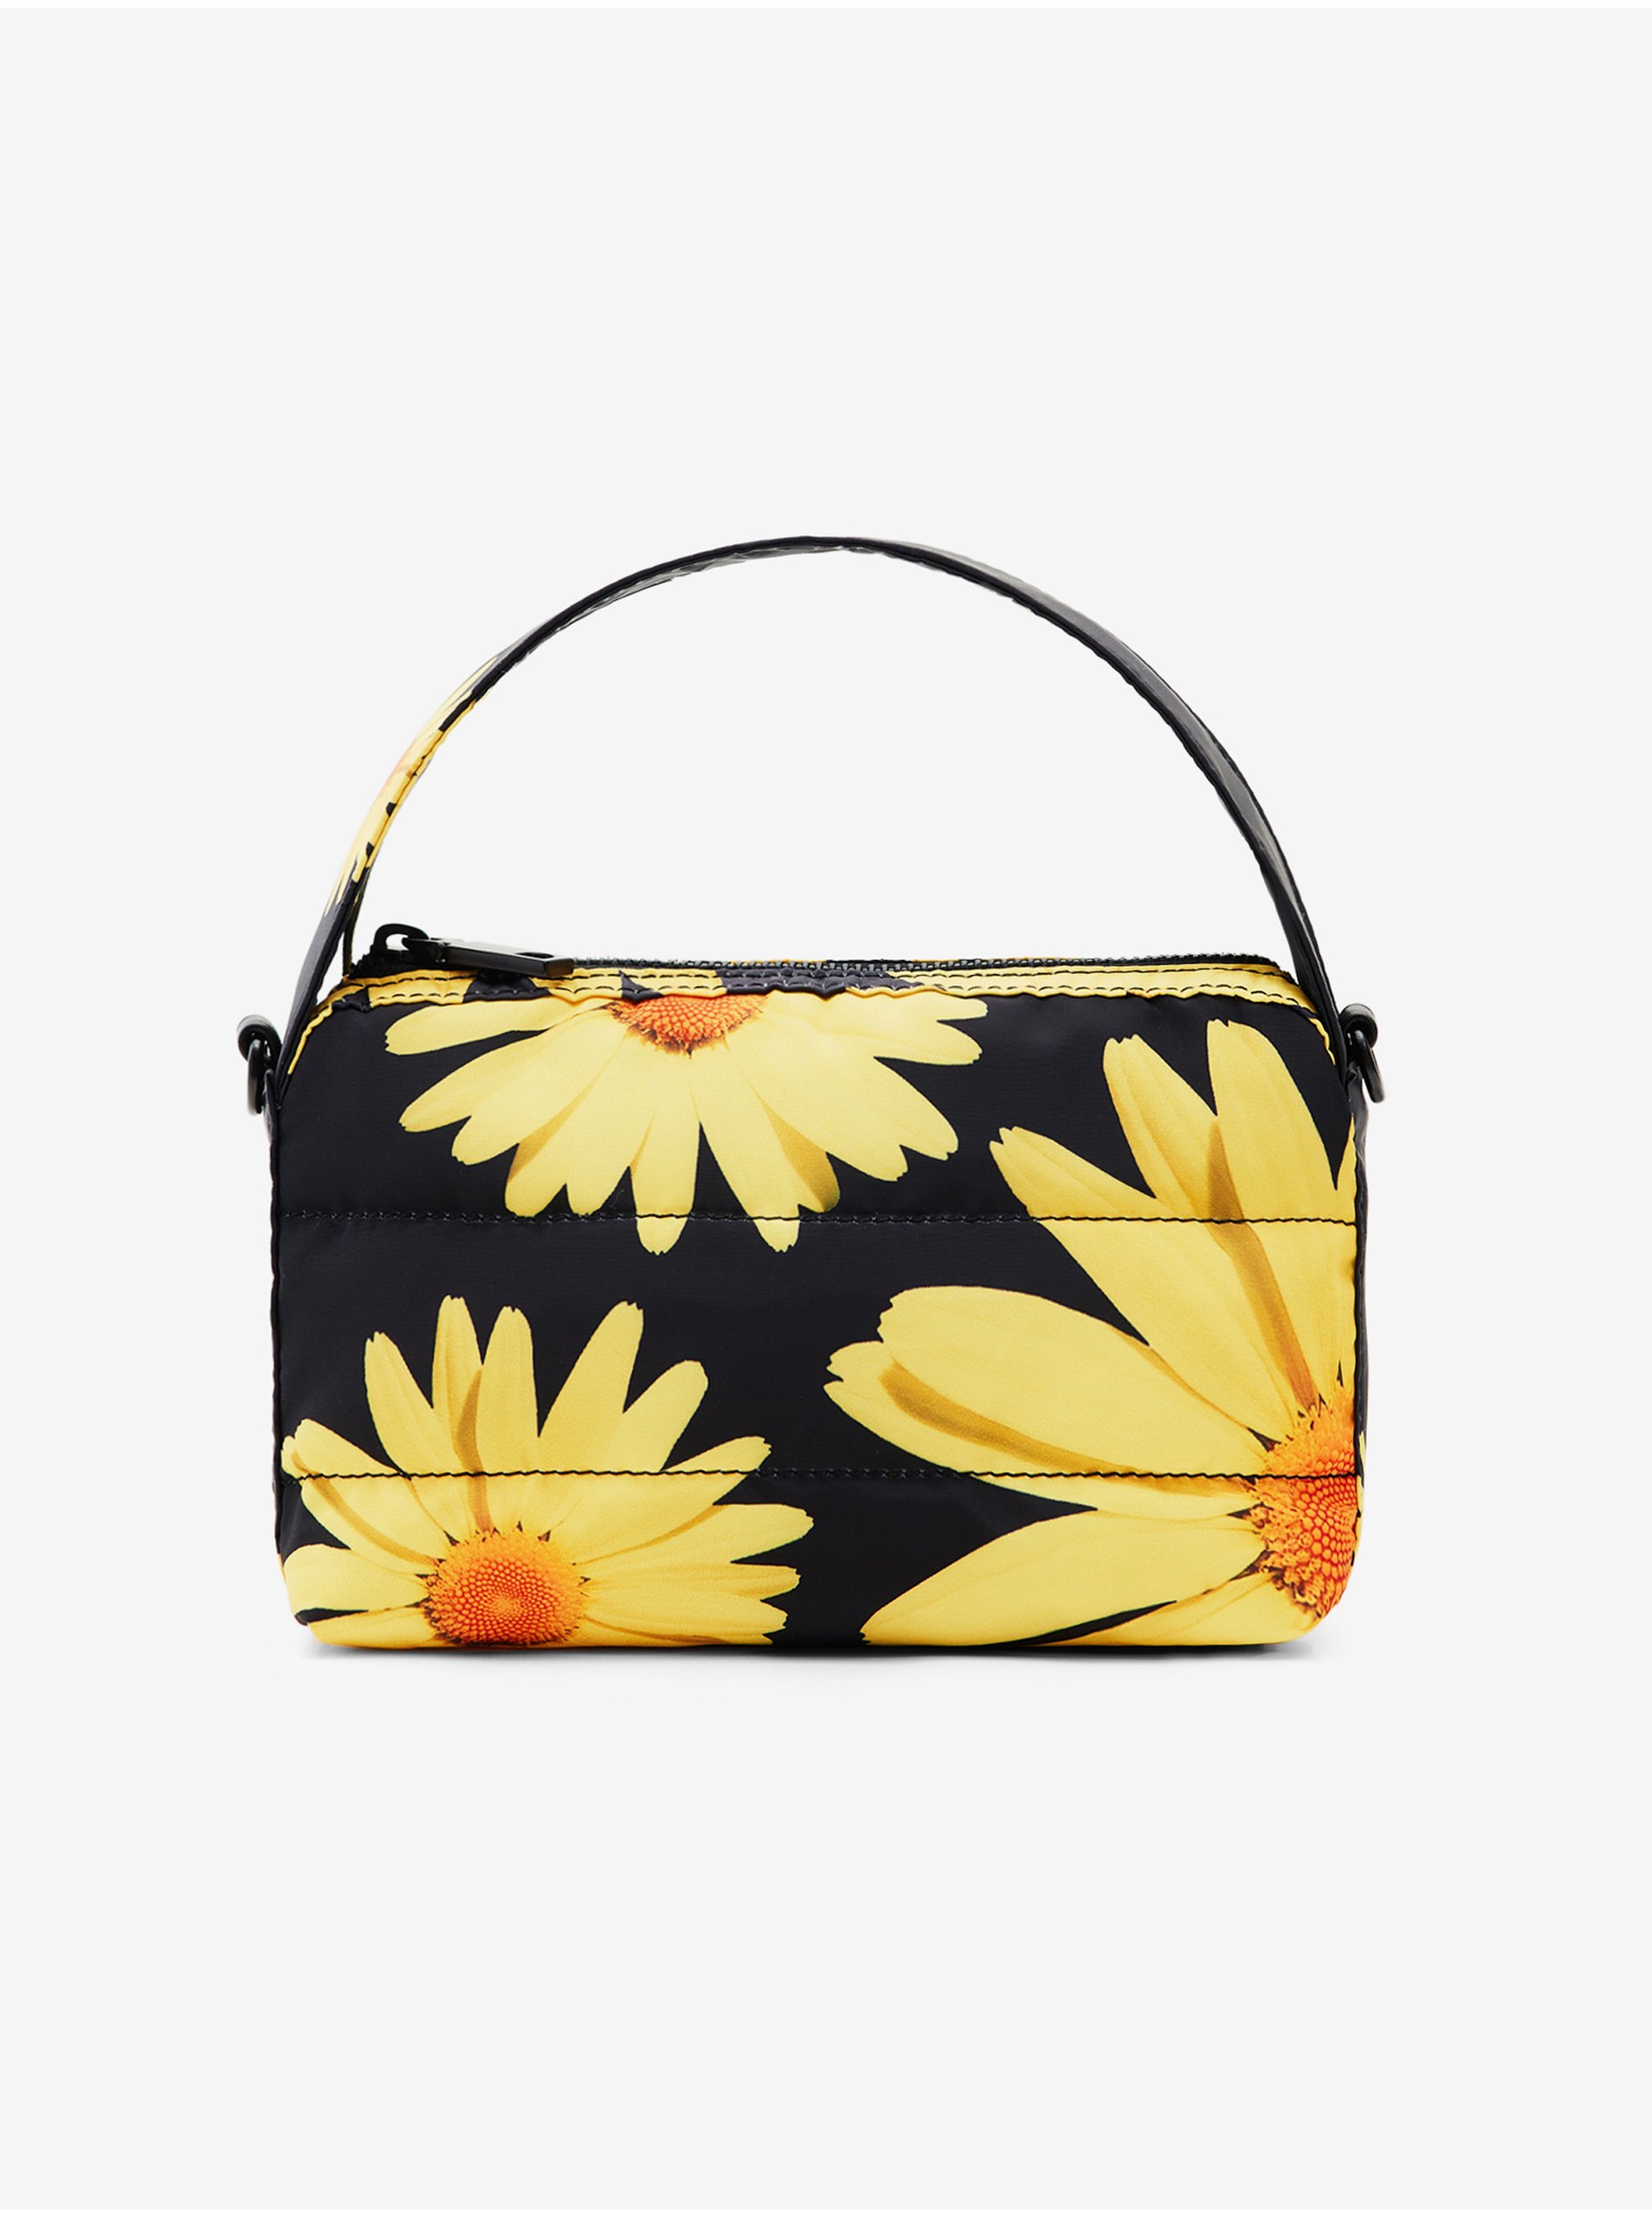 E-shop Žlto-čierna dámska kvetovaná kabelka Desigual Lacroix Margaritas